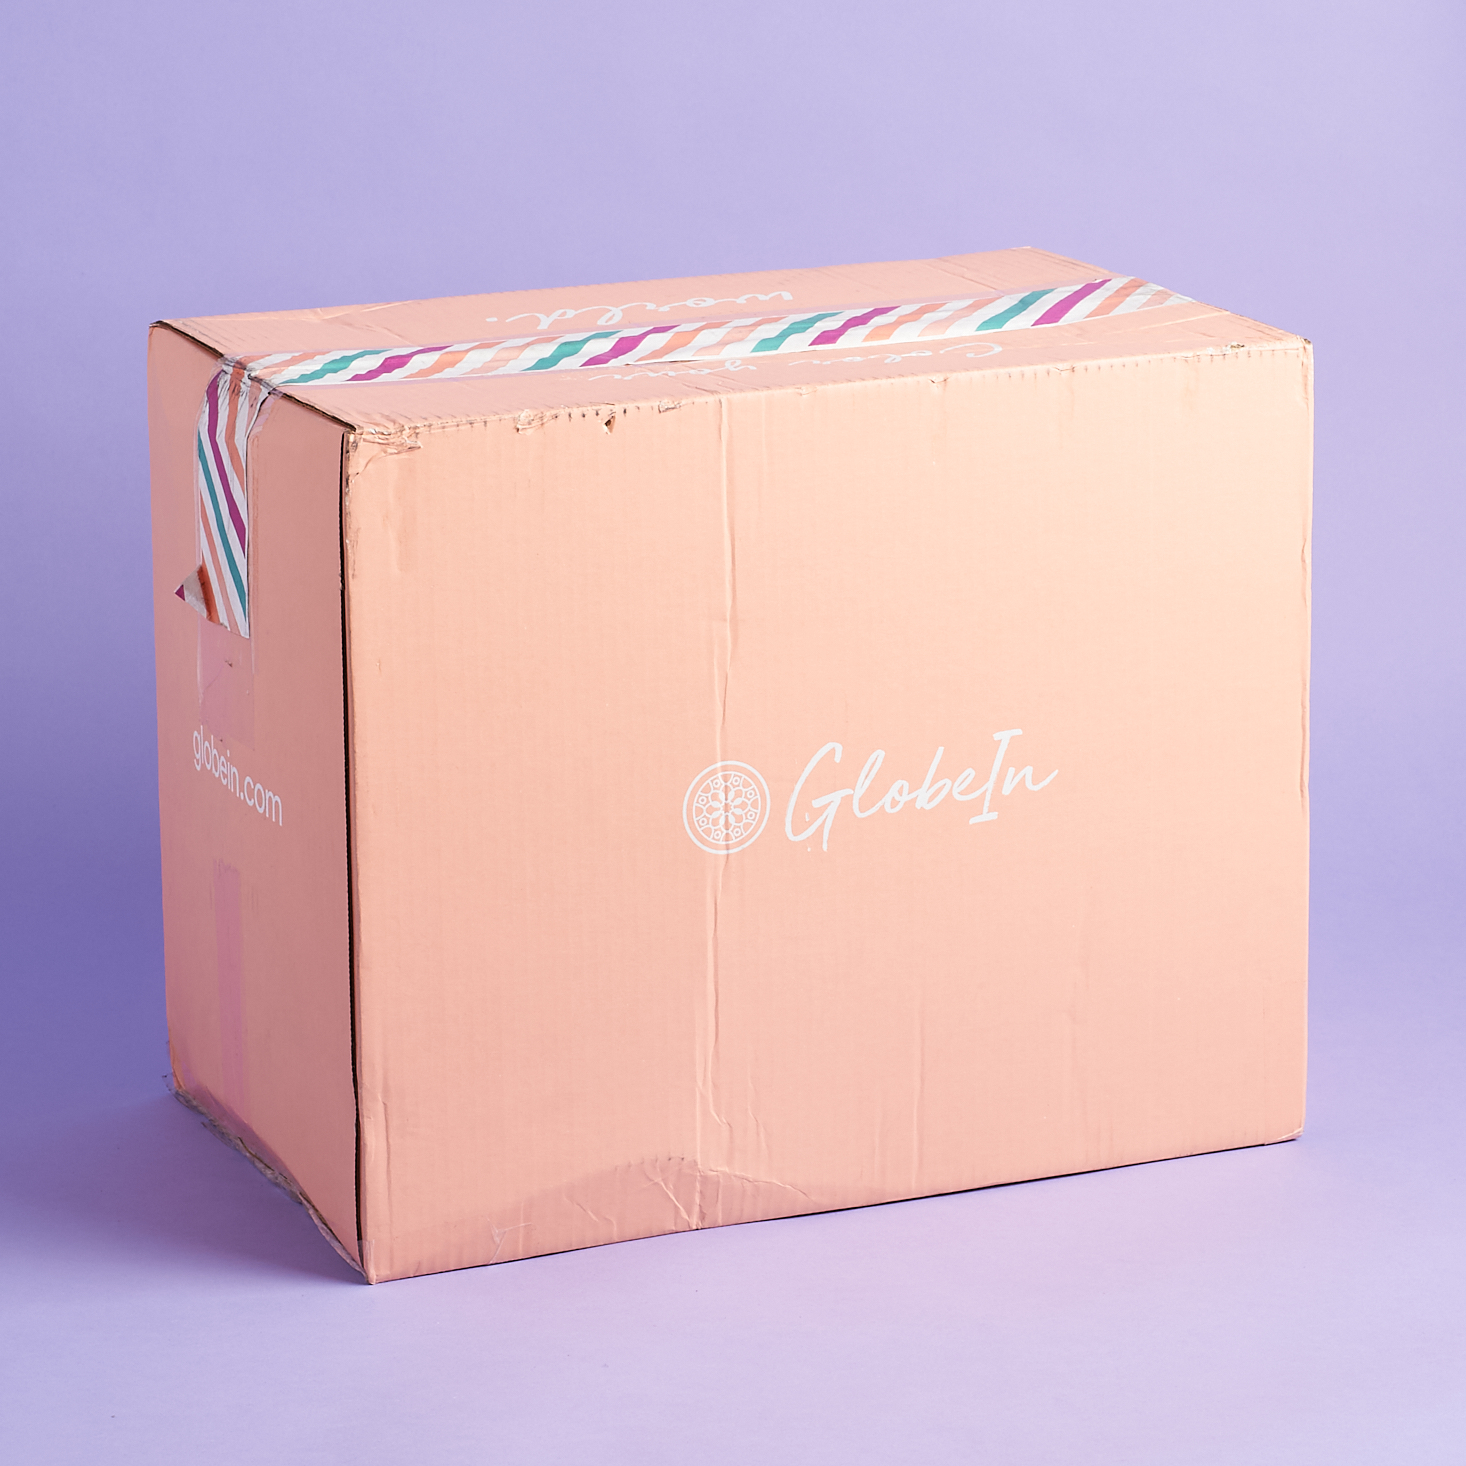 GlobeIn Artisan Box “Savvy Box” Review + Coupon – April 2020